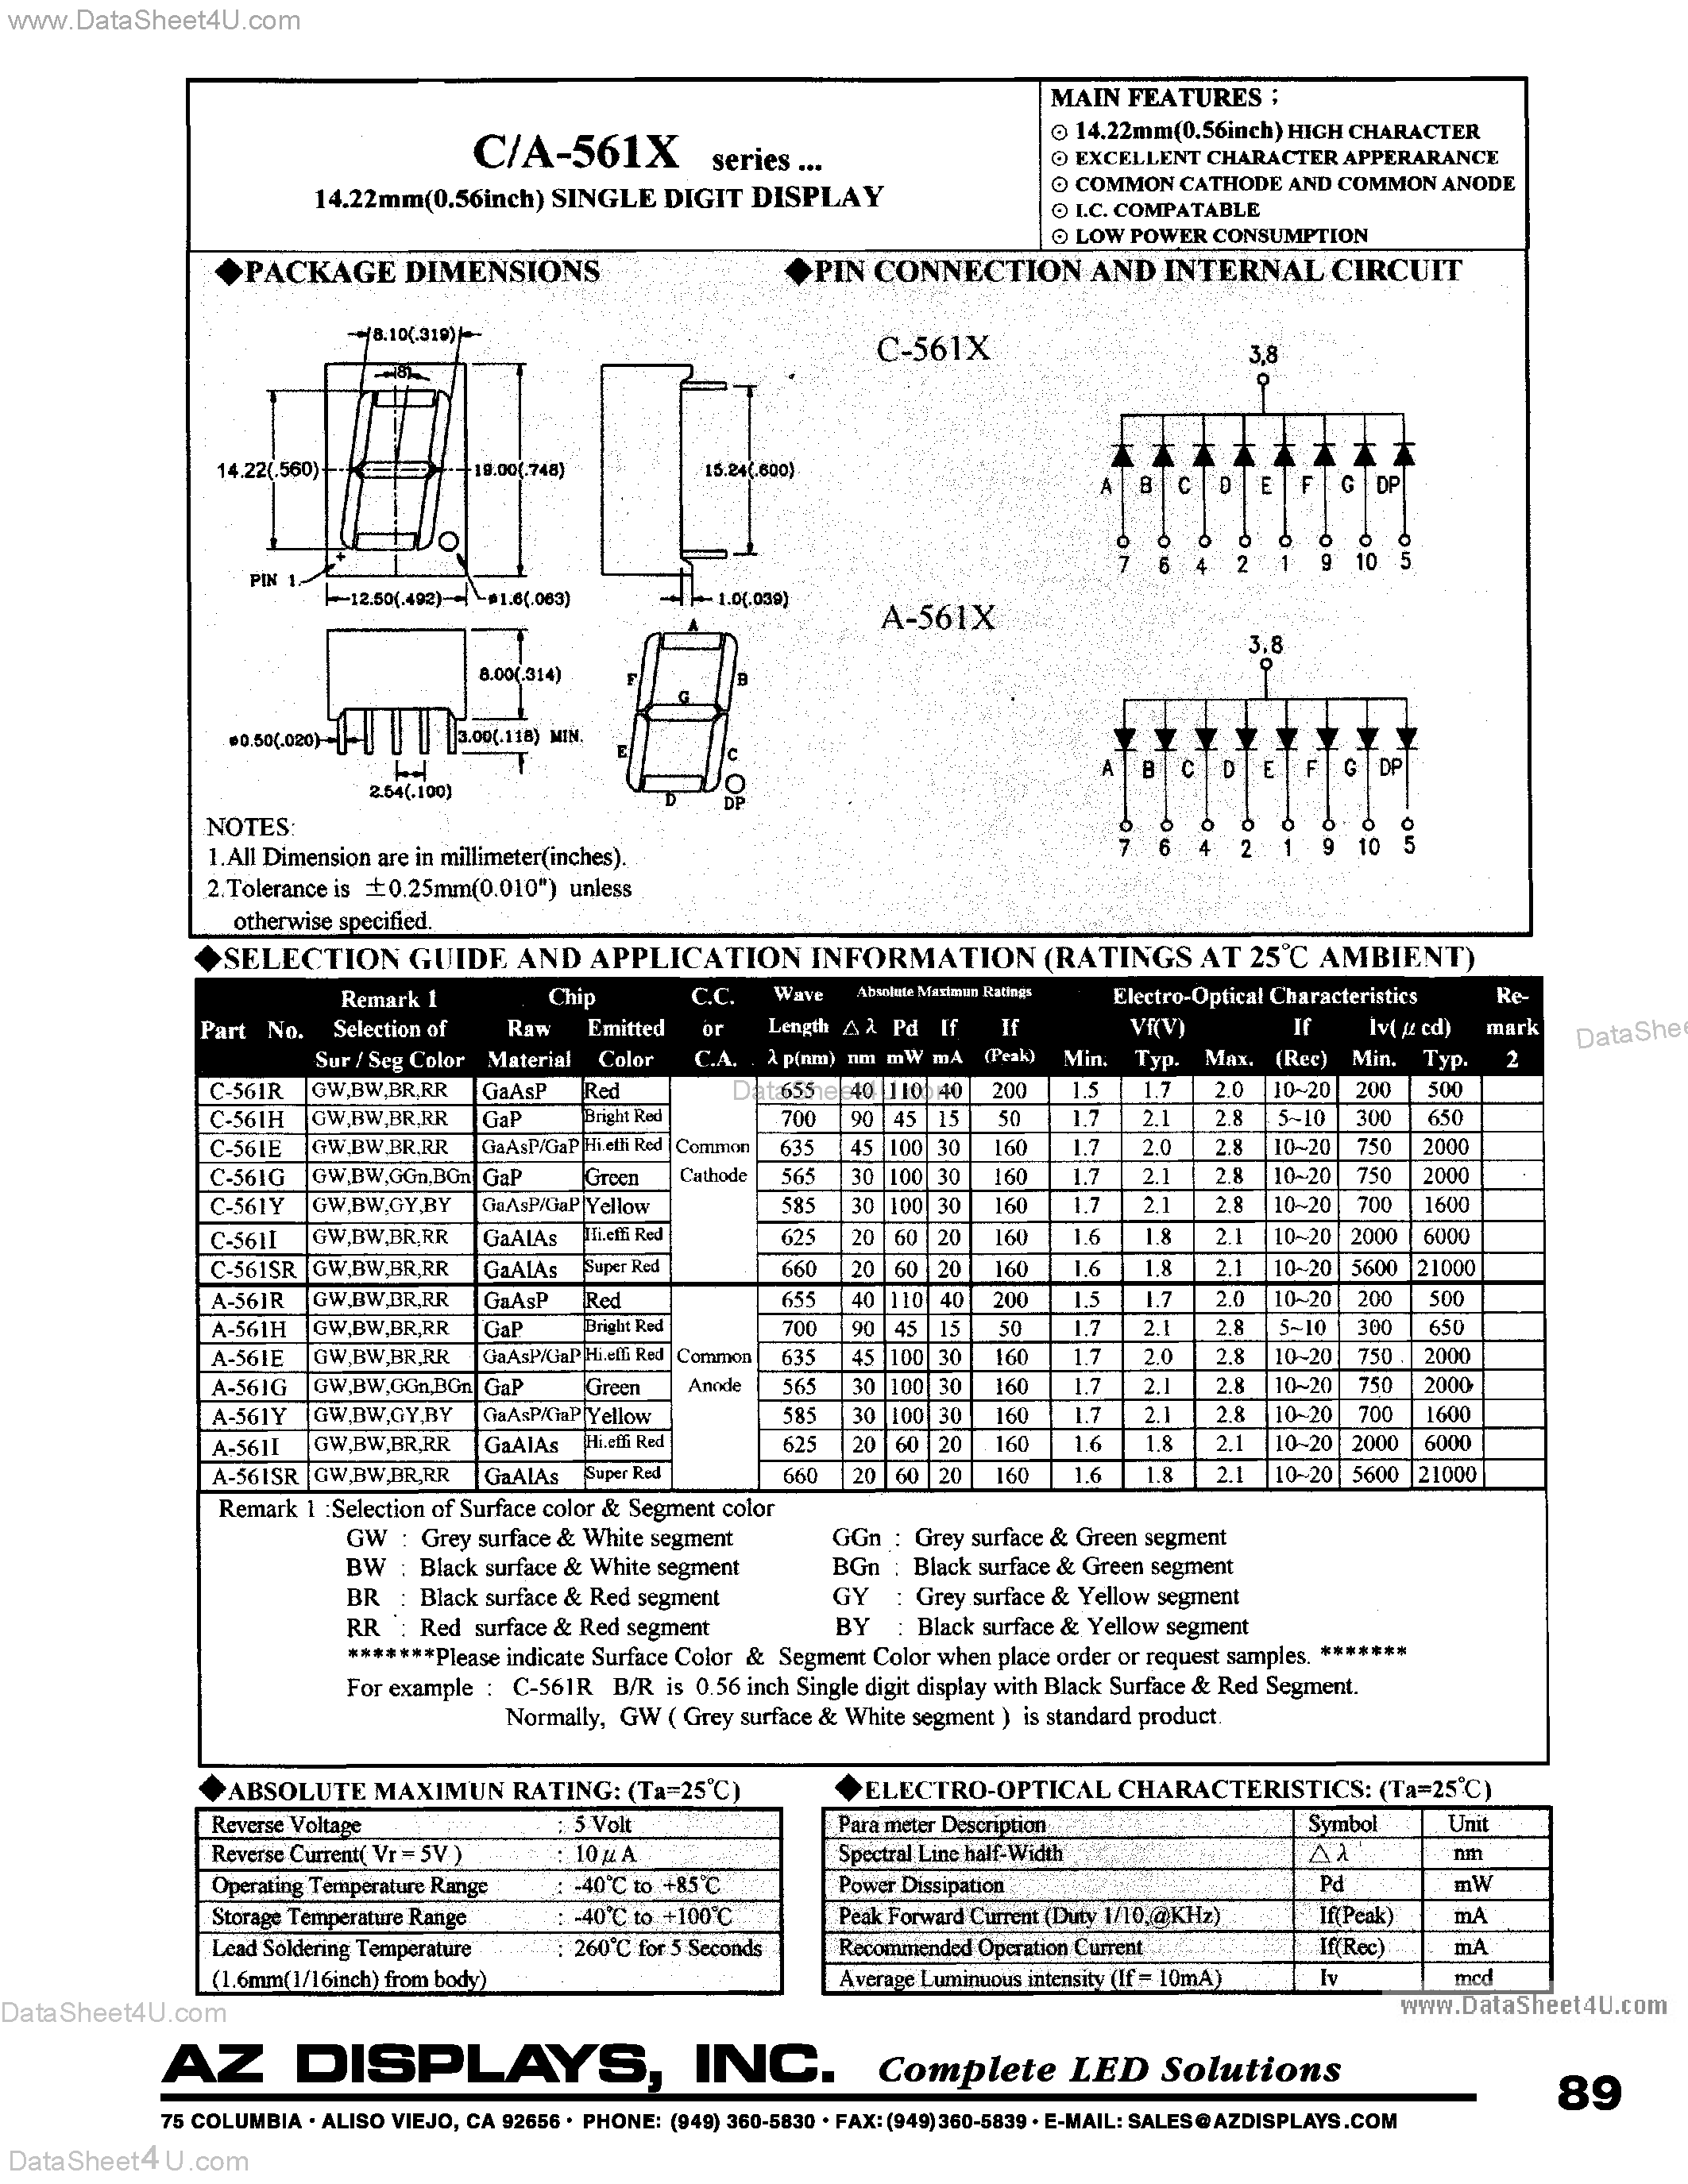 Даташит C-561I - (C-561x) LED Display страница 1